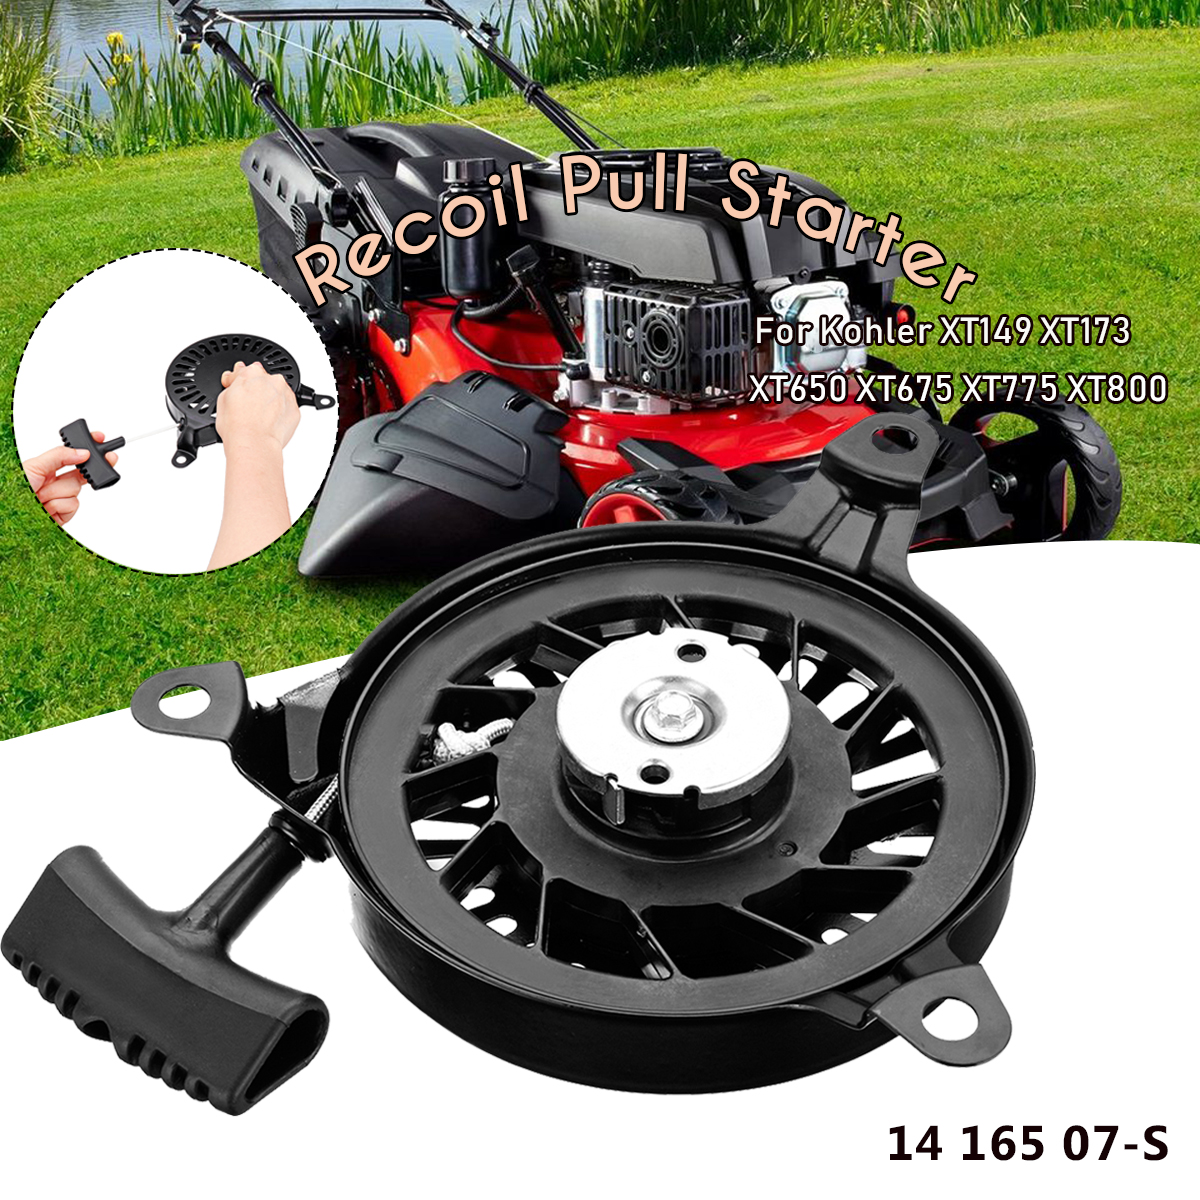 

14 165 07-S Recoil Pull Starter Part Accessories For Garden Lawnmower Kohler XT149 XT173 XT650 XT675 XT775 XT800